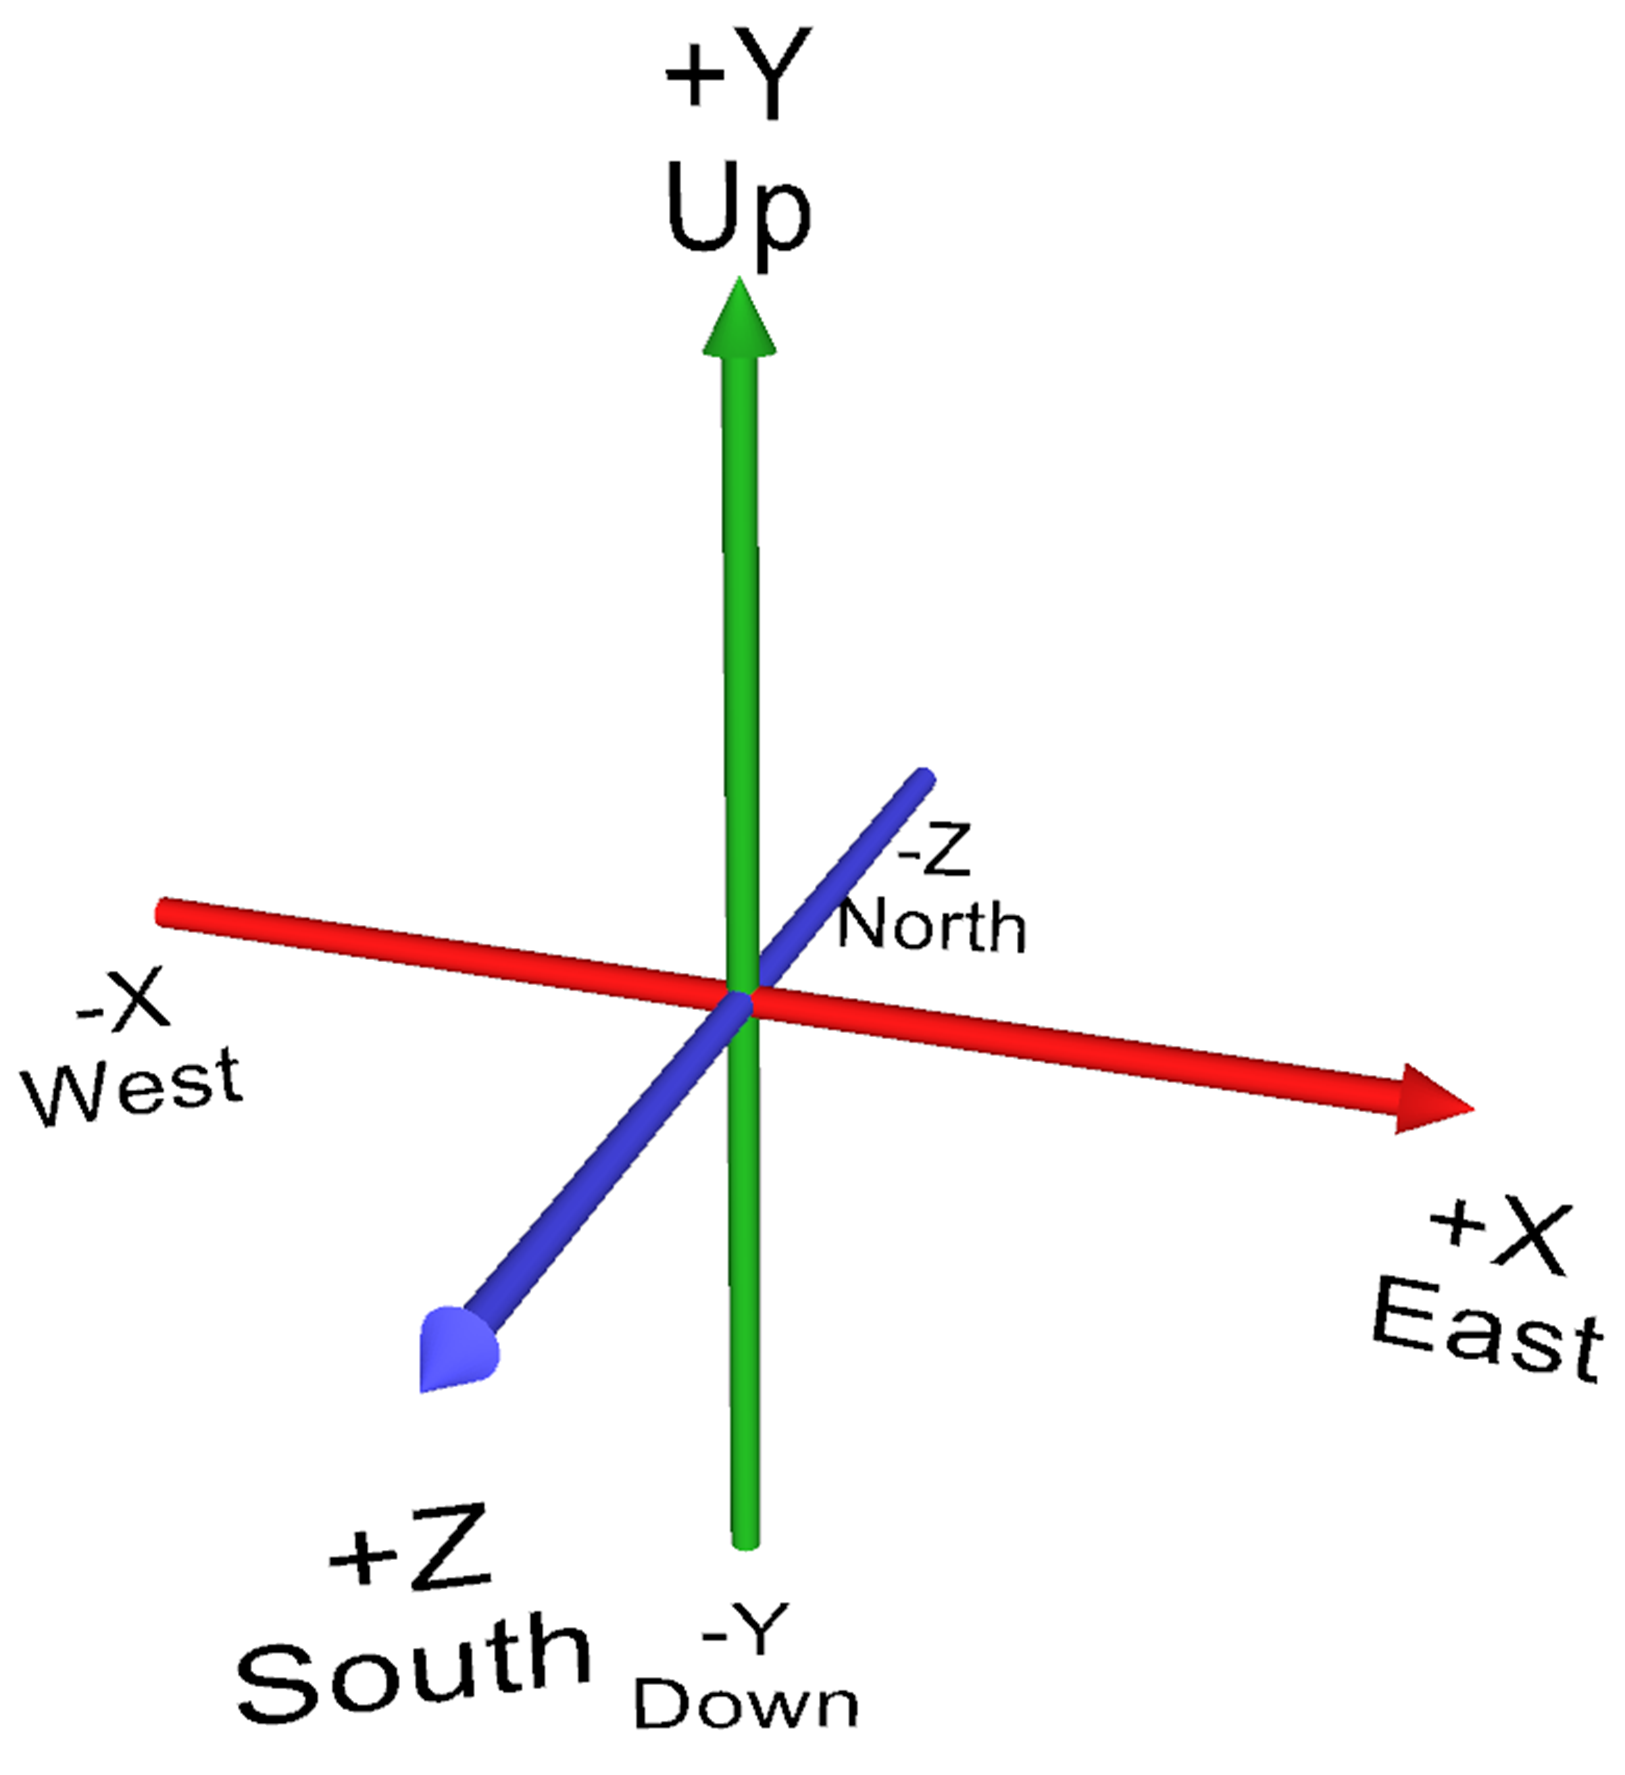 z axis graph